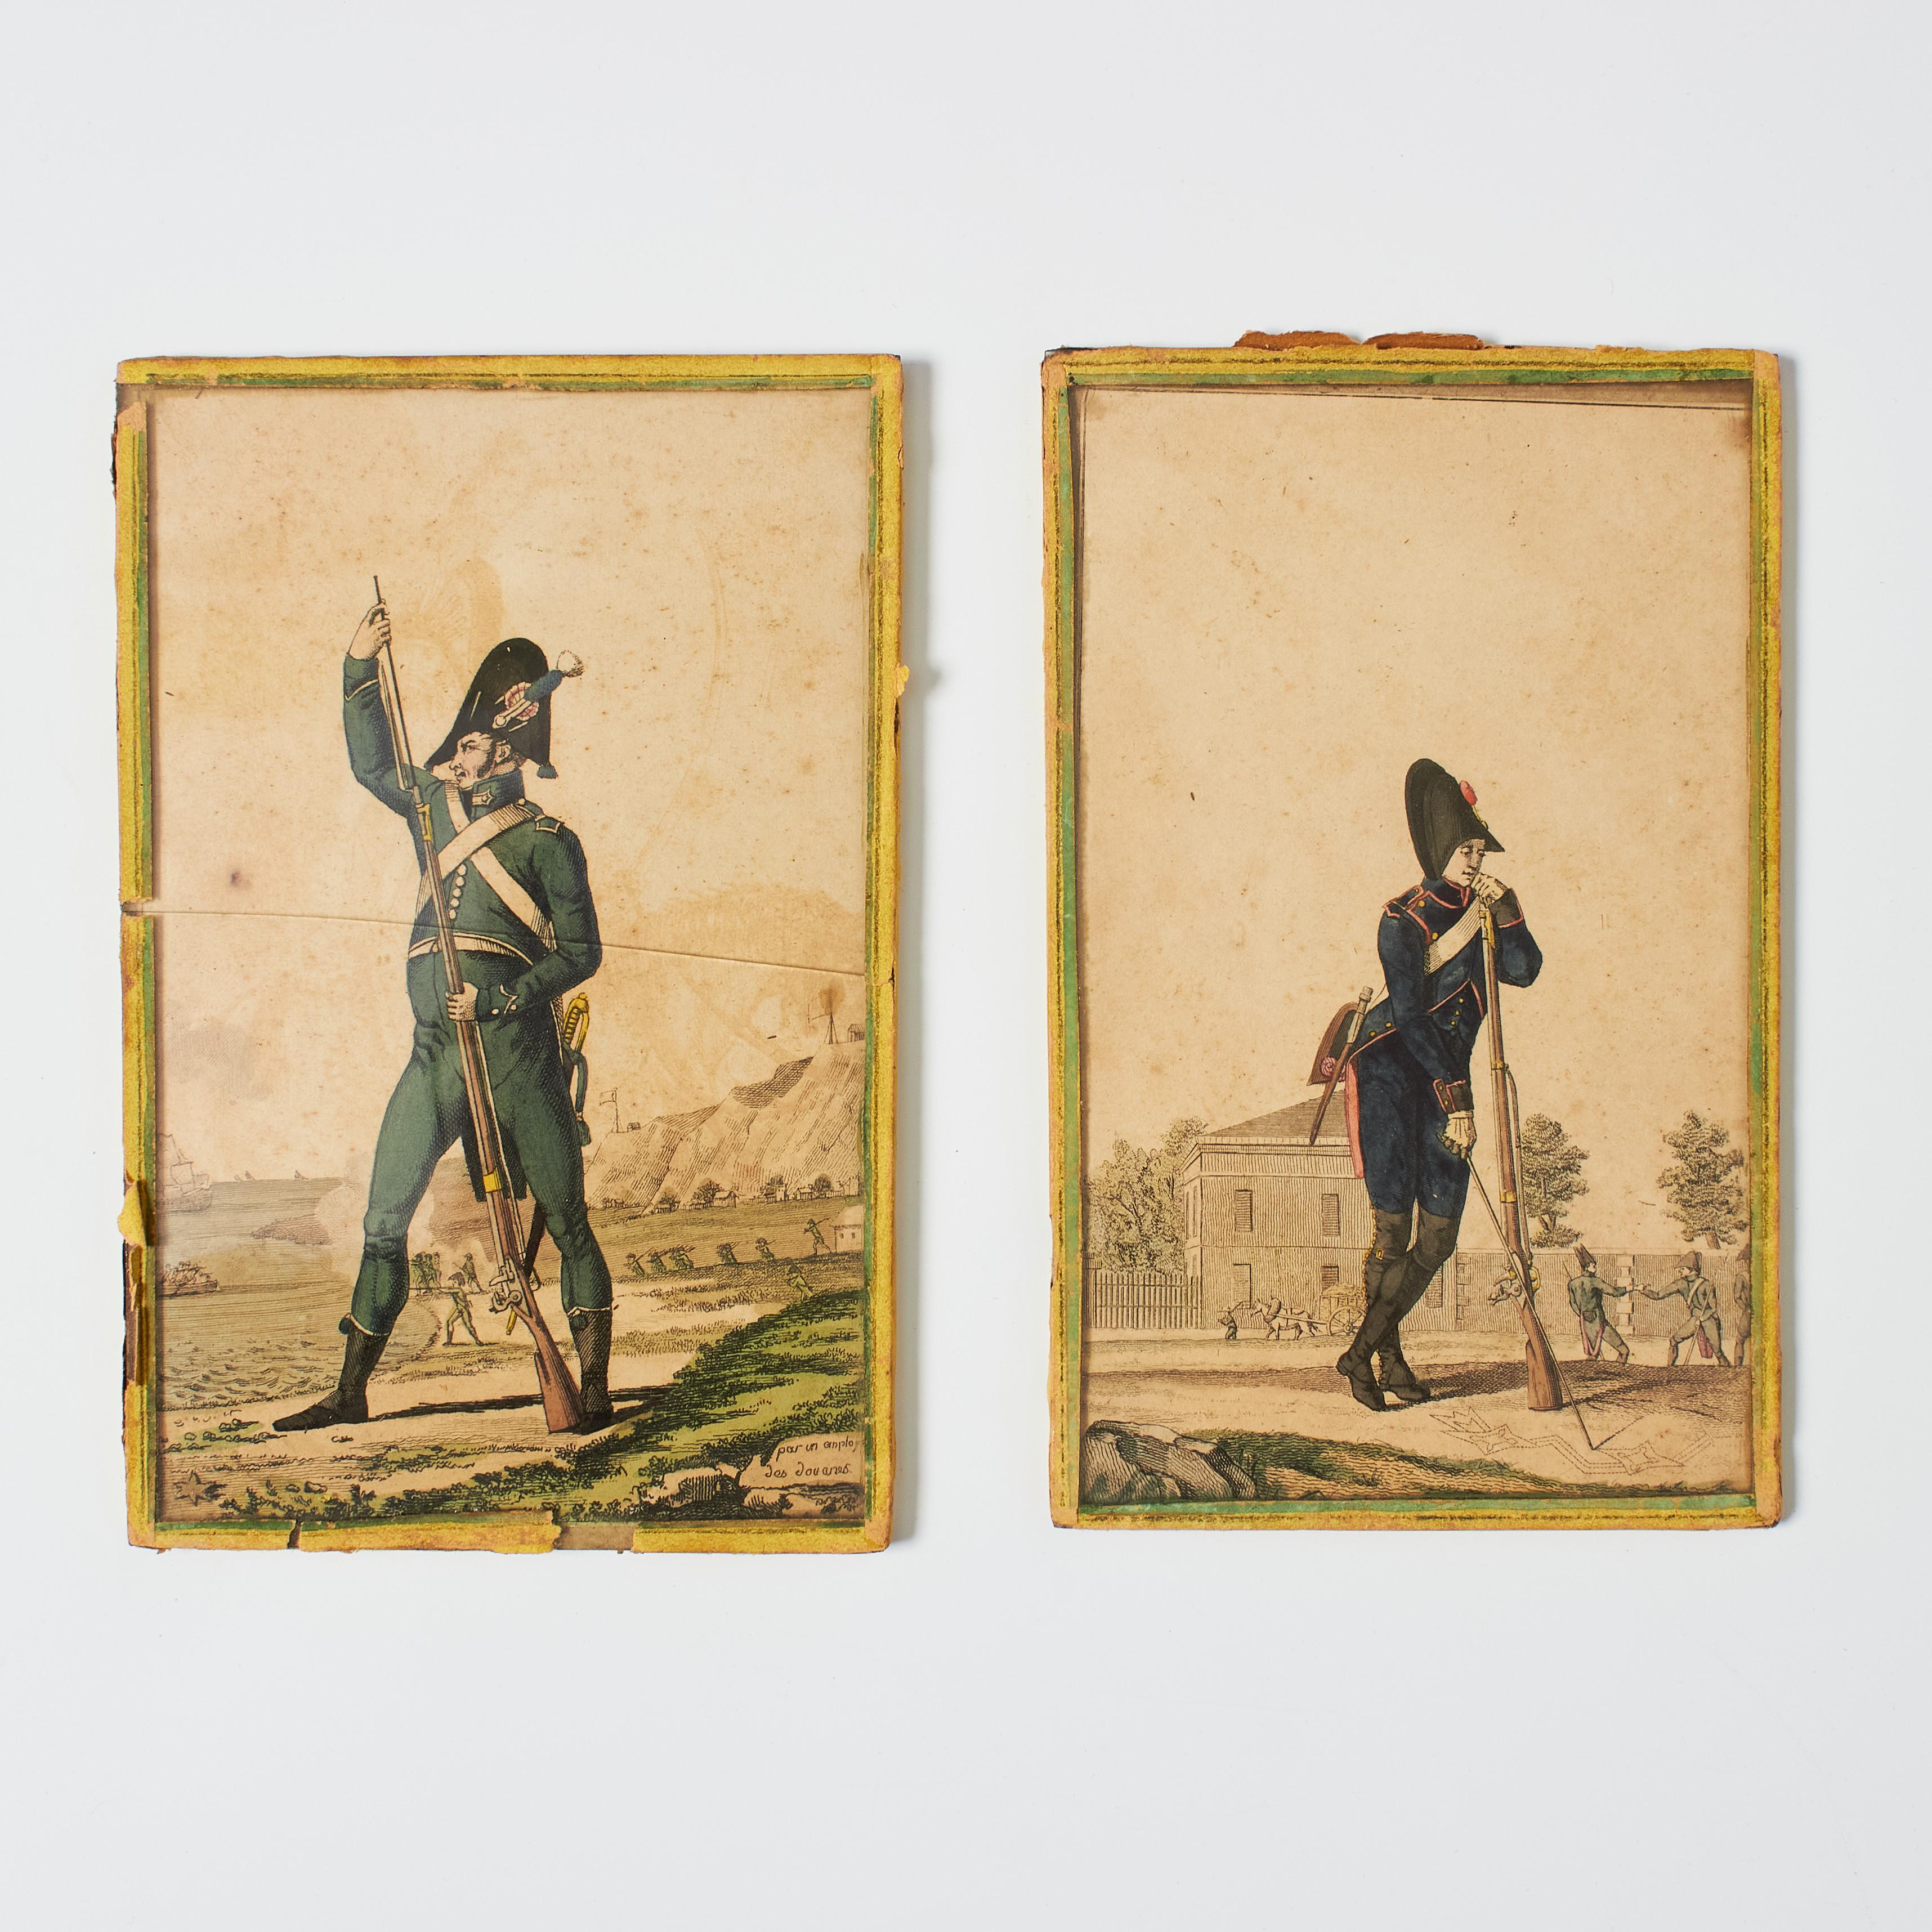 Tauchen Sie ein in die reiche Geschichte mit unserem exquisiten Paar Militärstiche aus dem 20. Jahrhundert. Die mit zarten Farben und einer schönen Patina geschmückten Kunstwerke sind eine einzigartige Mischung aus Kunstfertigkeit und Kulturerbe.